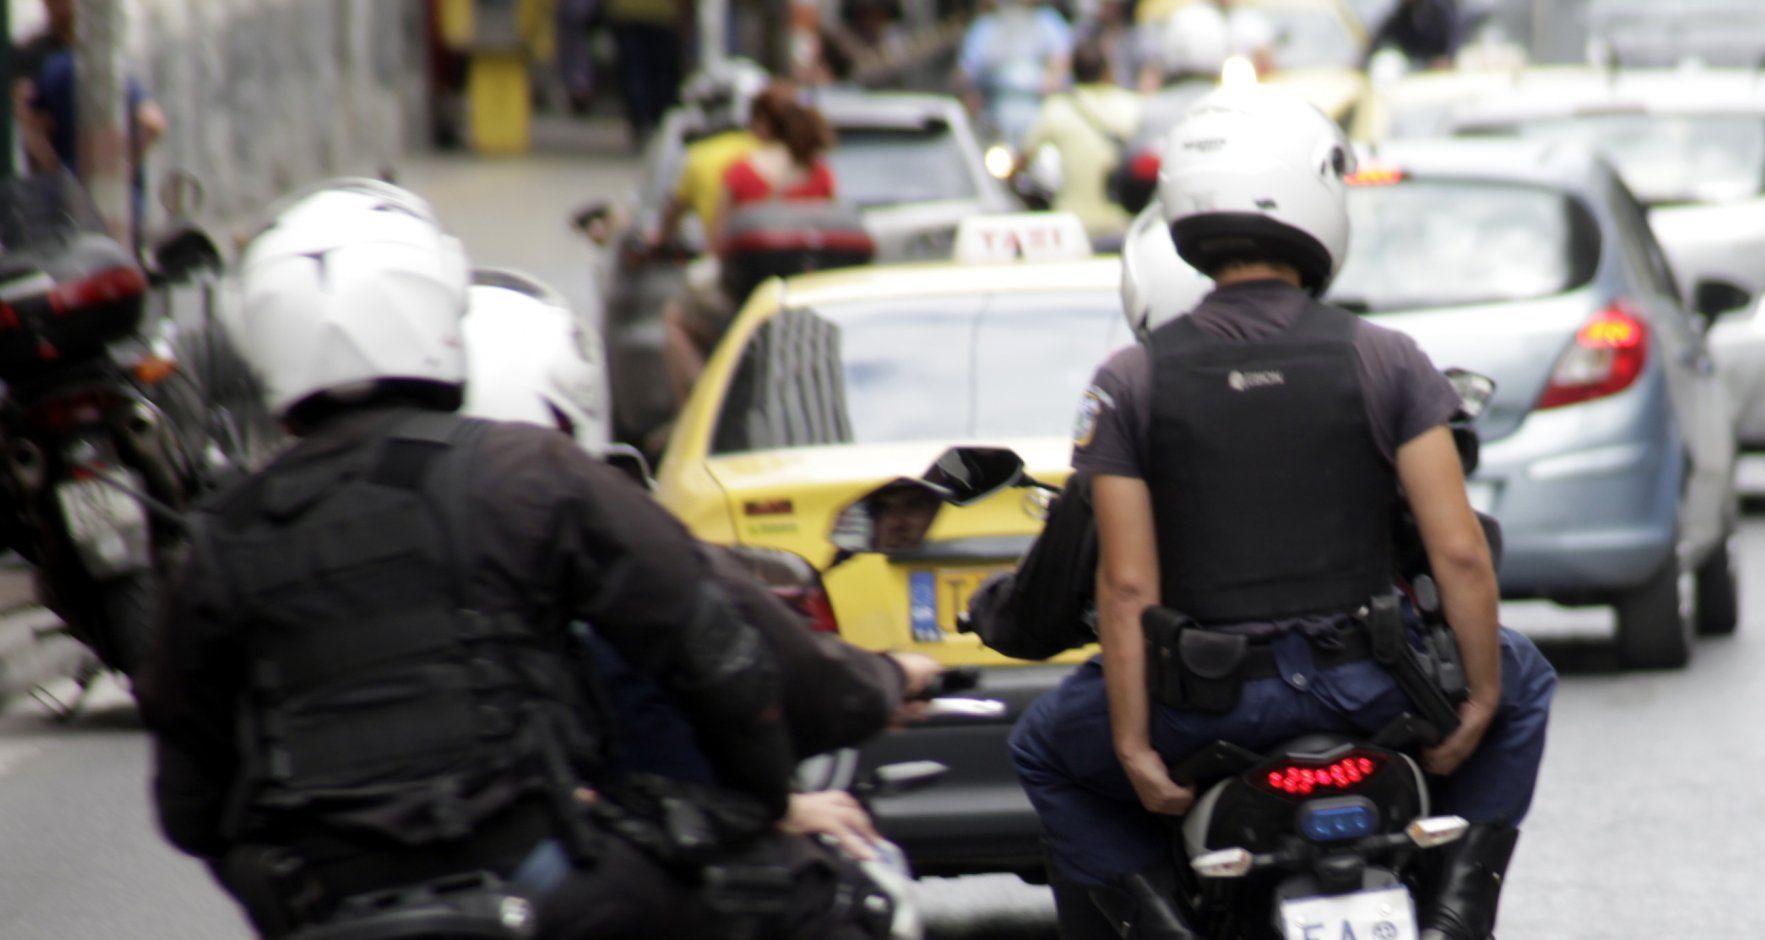 Θεσσαλονίκη: Σε διαθεσιμότητα ο αστυνομικός που έπαιρνε άδειες με ψευδείς ιατρικές γνωματεύσεις